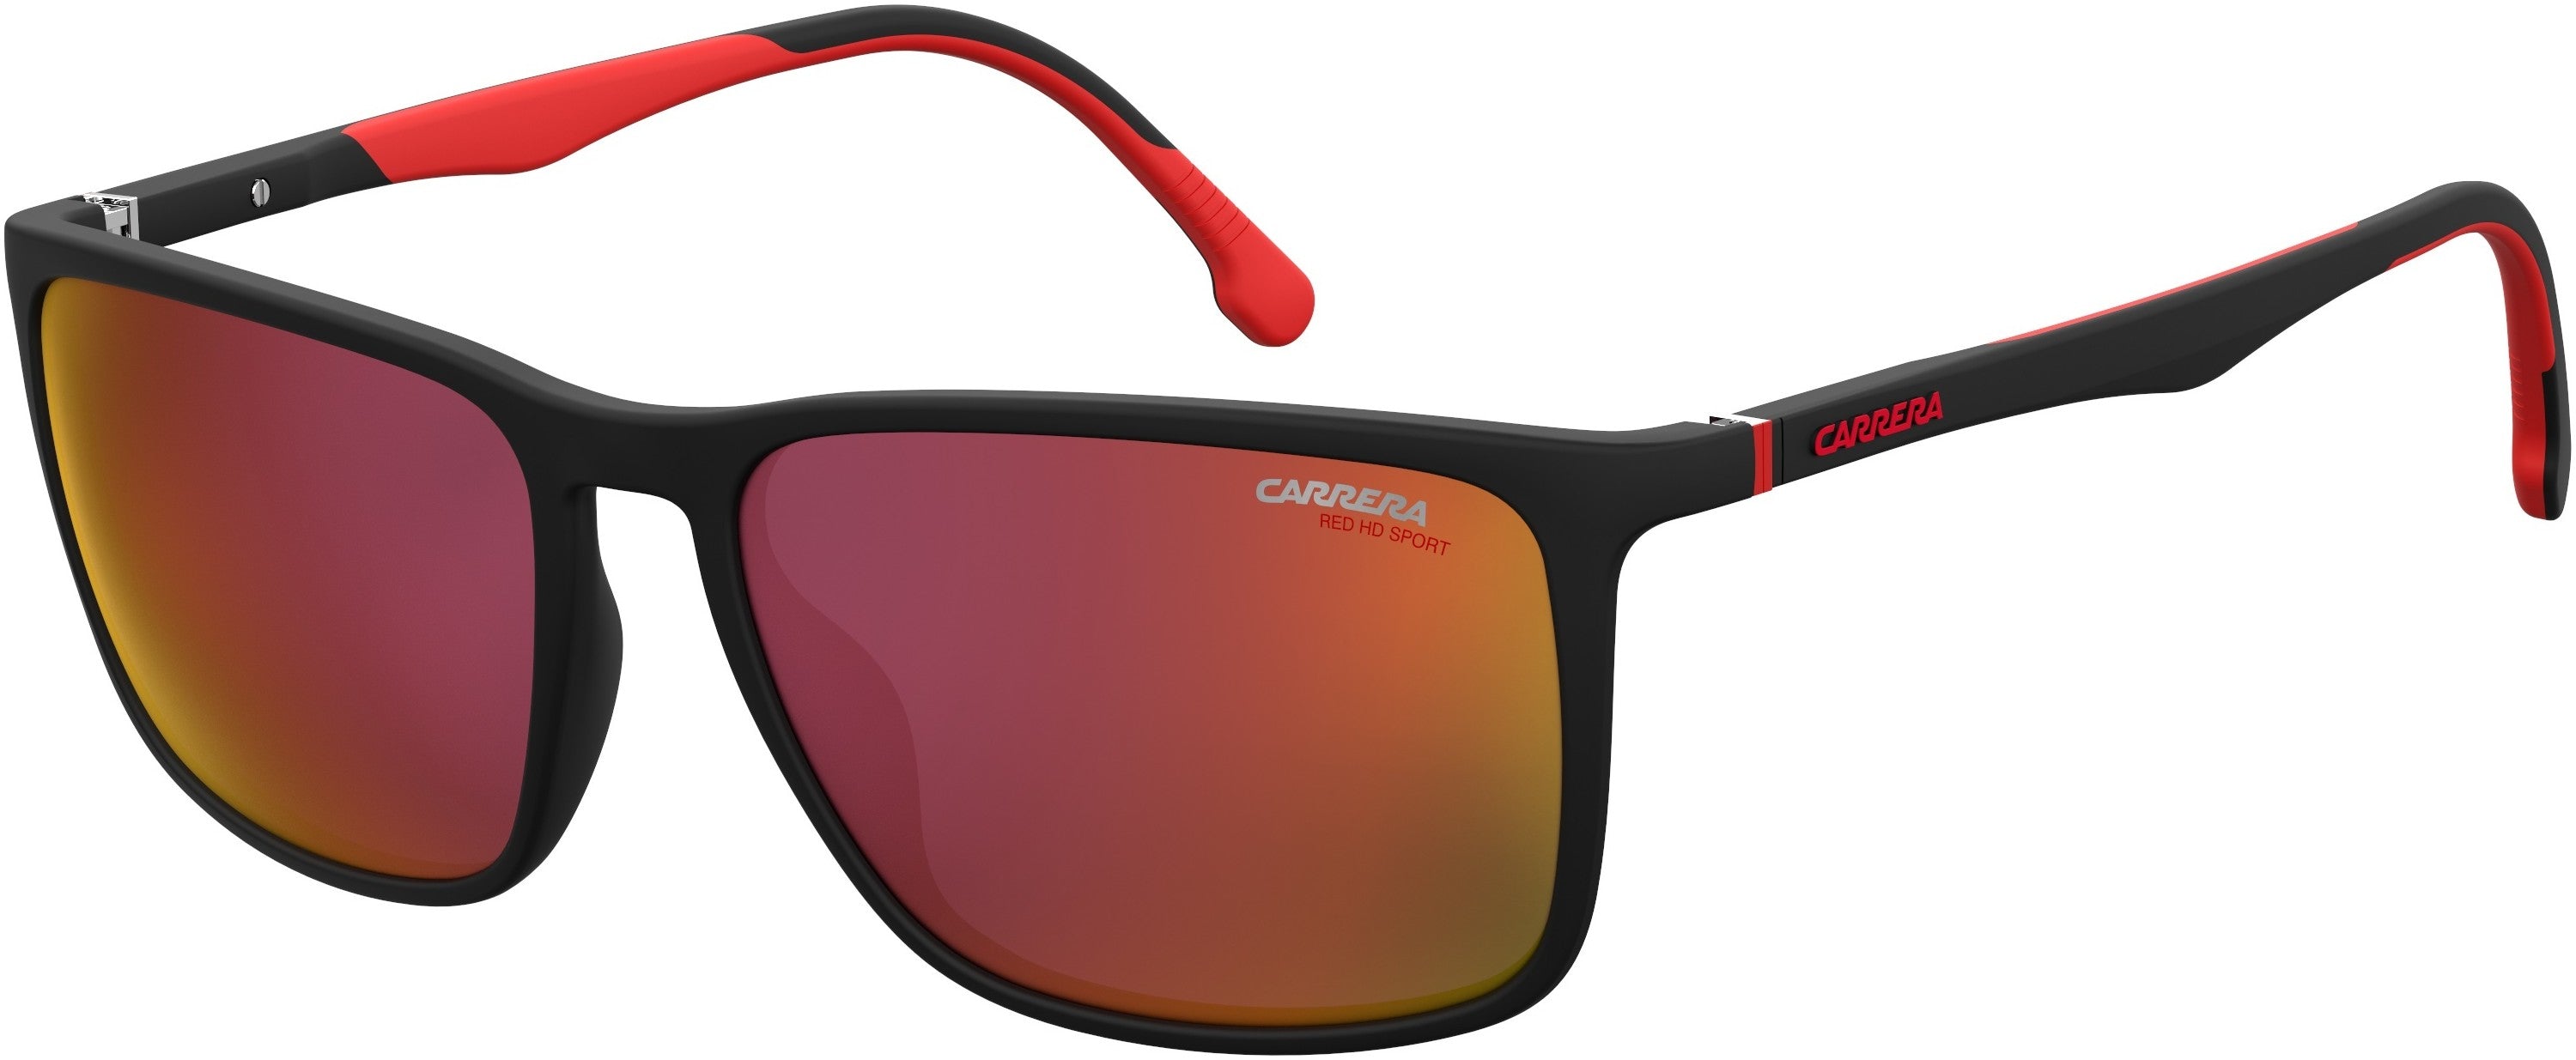  Carrera 8031/S Rectangular Sunglasses 0BLX-0BLX  Bkrt Crystal Red (W3 Red Hd Ml Ol)